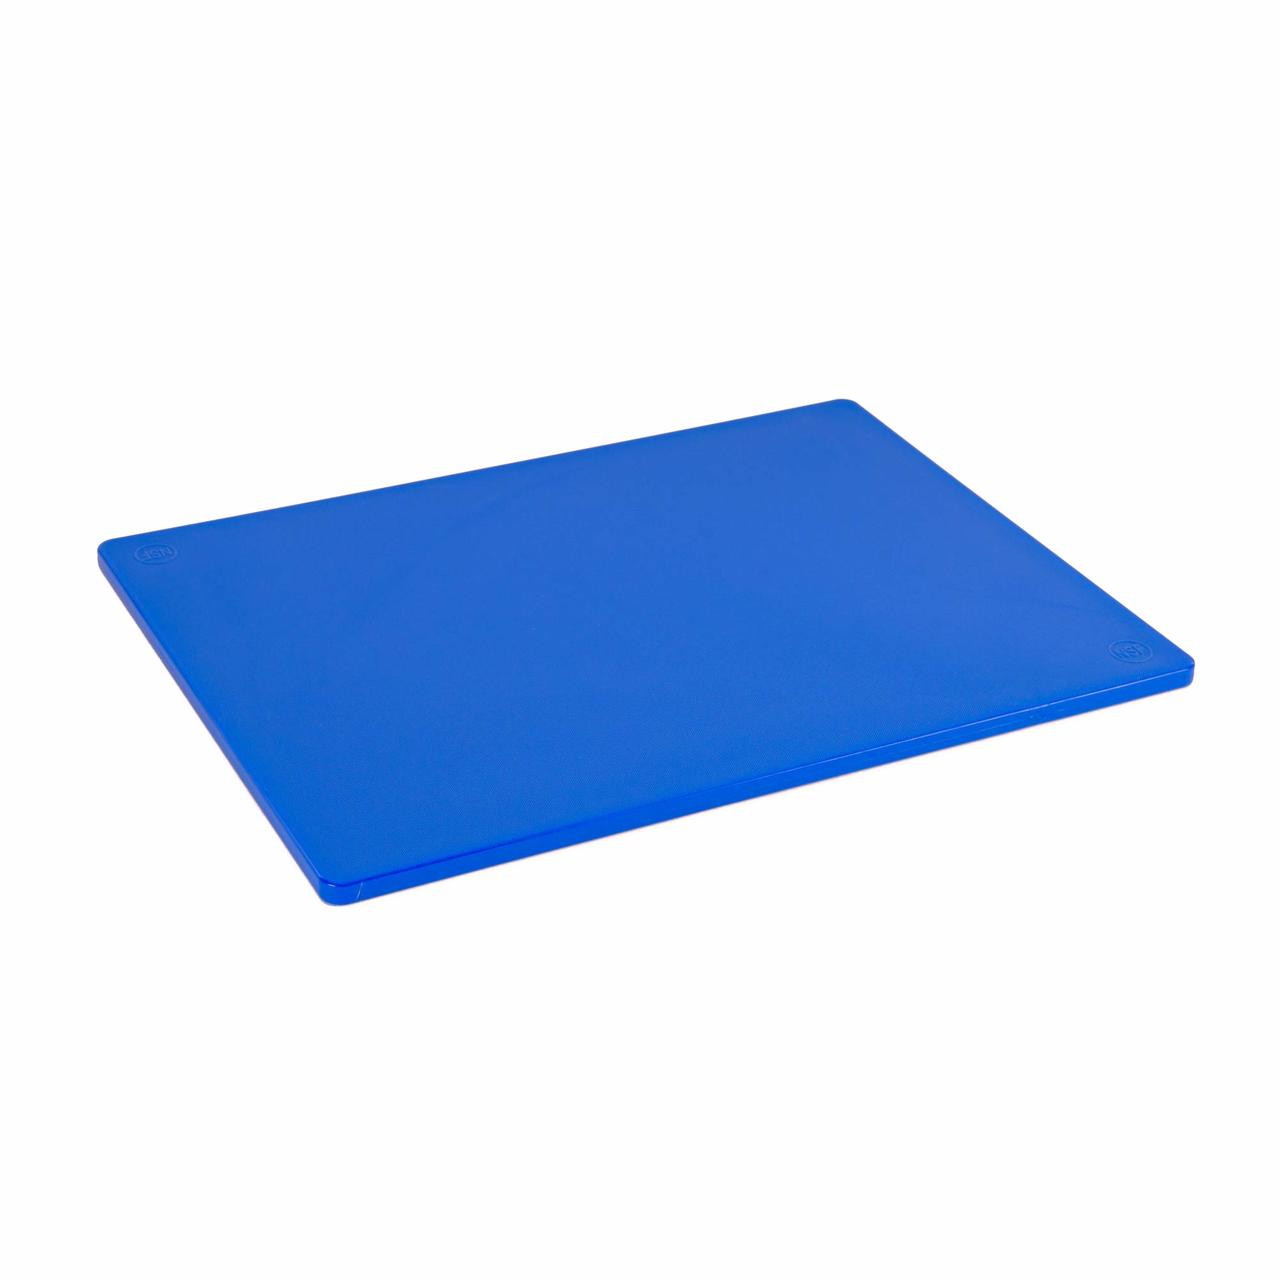 Large Plastic Cutting Board, Dishwasher Safe Polyethylene Chopping